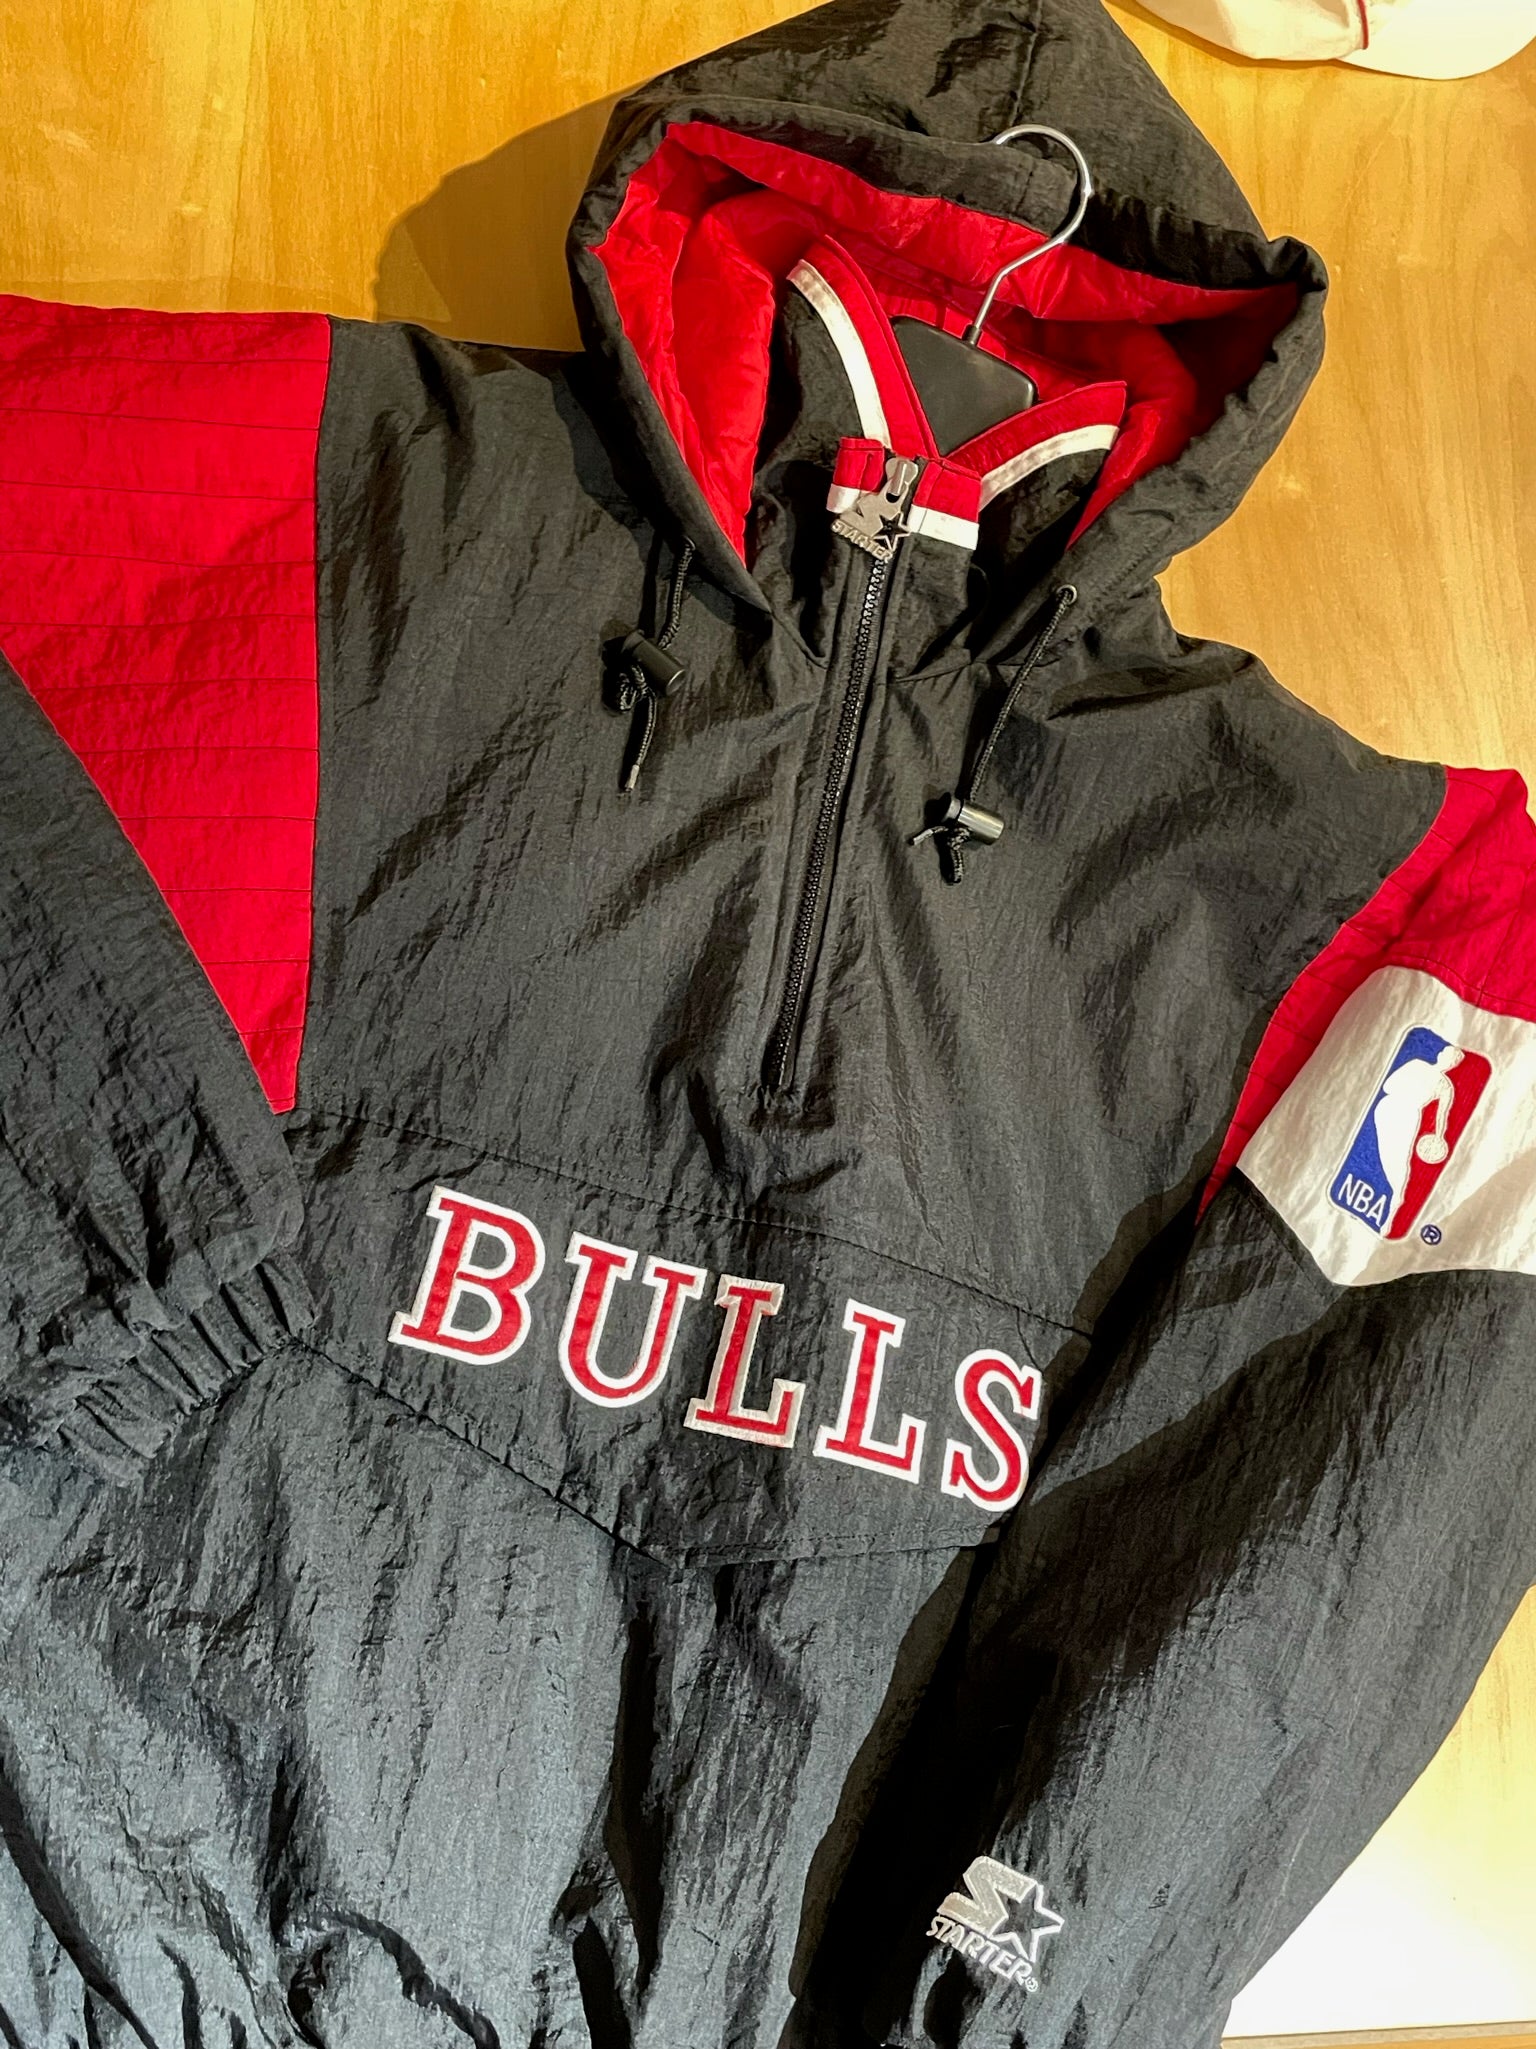 Vintage 1990s Starter Chicago Bulls NFL Starter Full Zip 